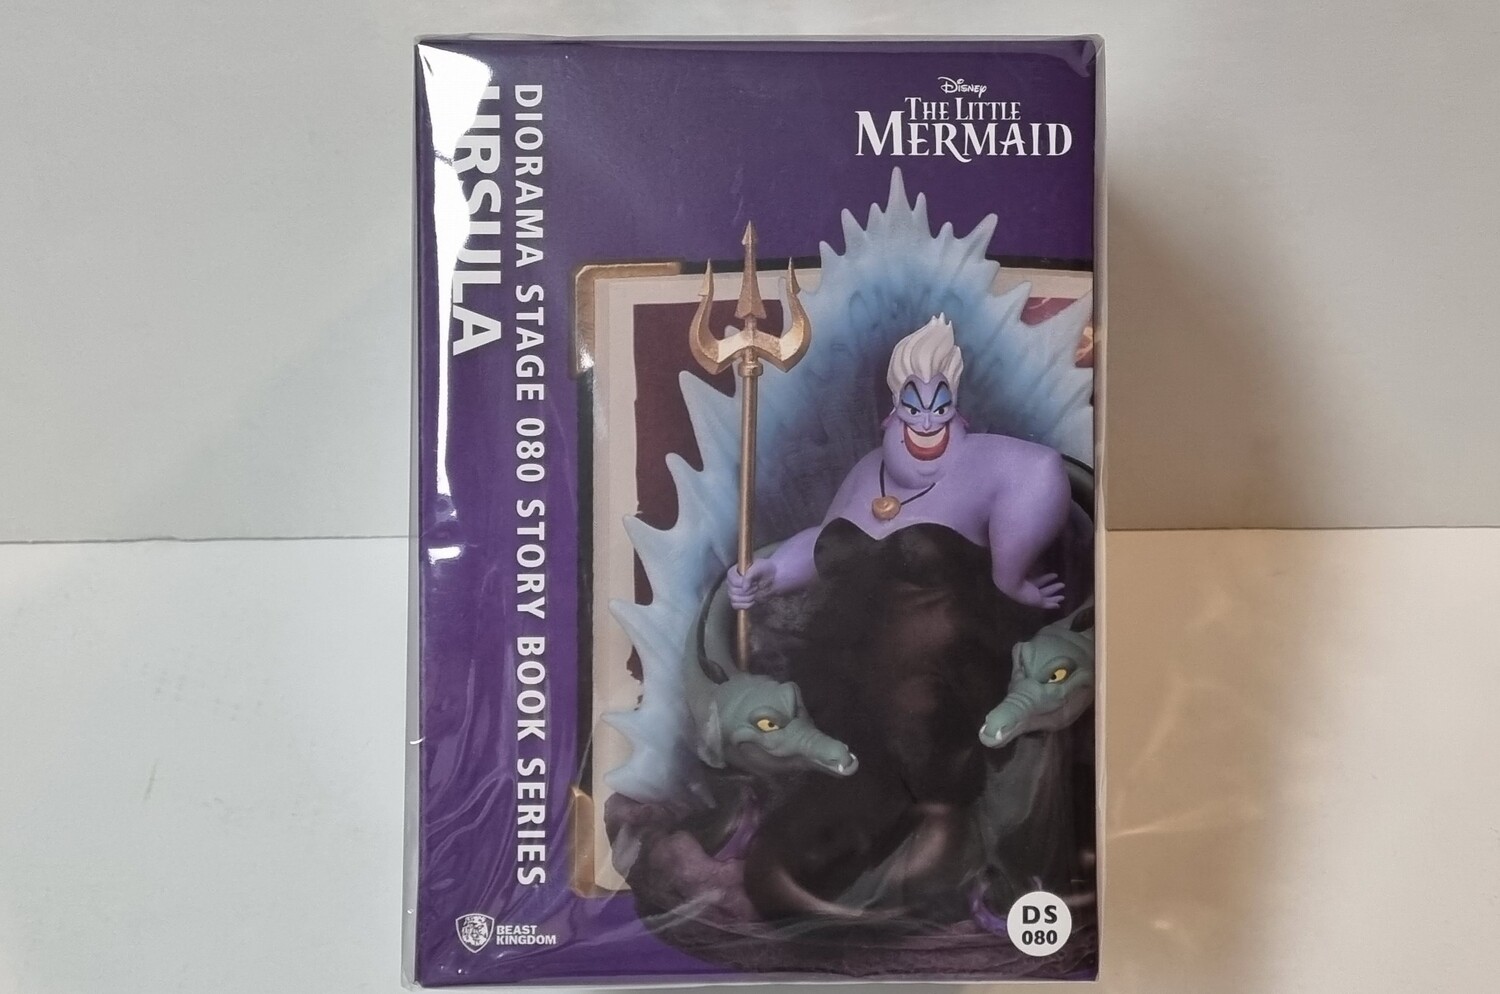 PVC Diorama, DS-080, Ursula, Closed Box, Disney Story Book Series